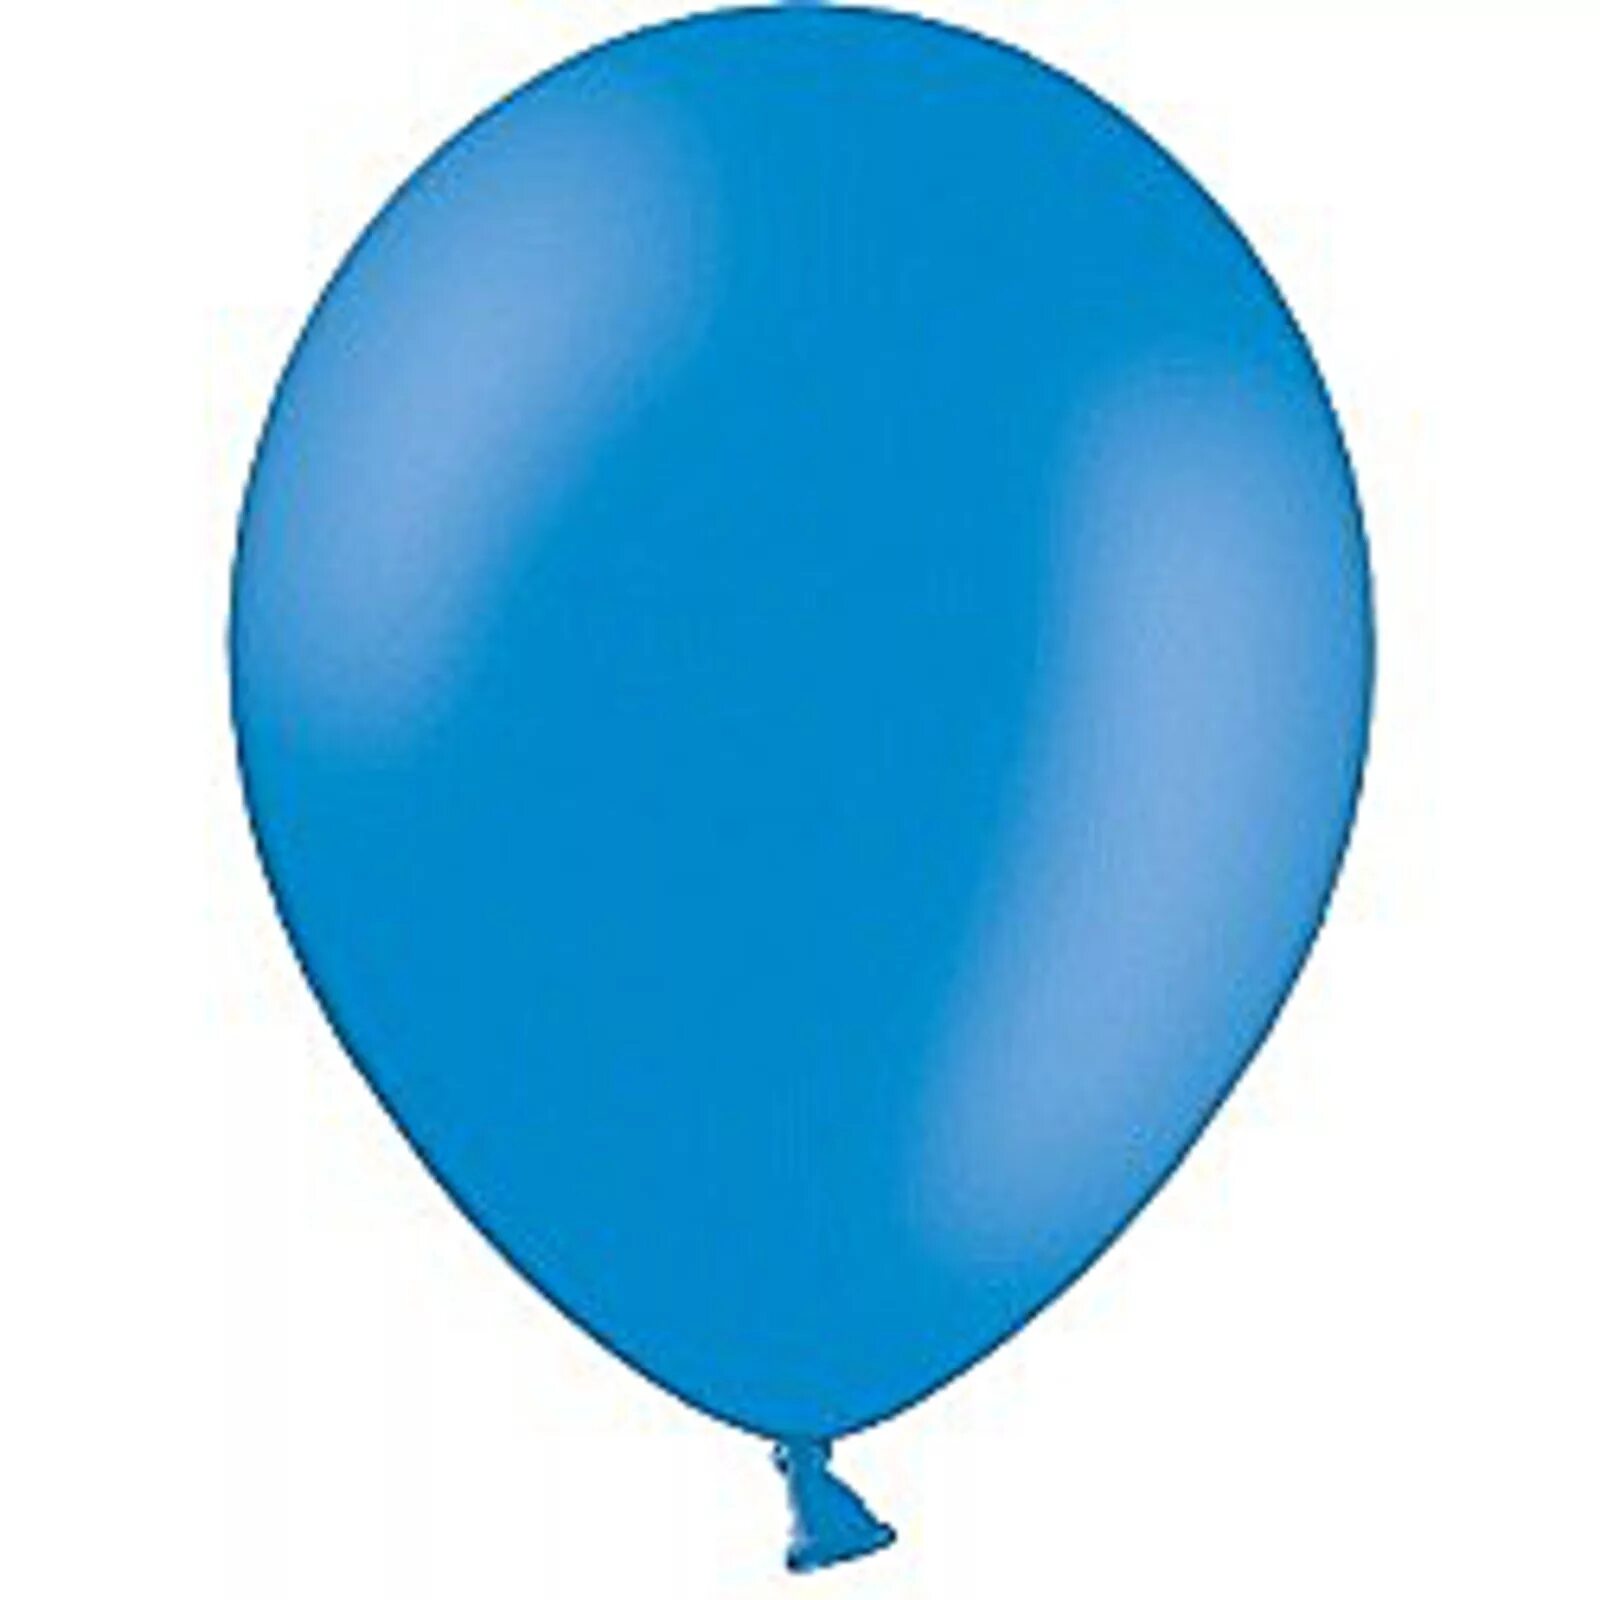 Шар был не синий. 1102-1785 Пастель Orange шар Белбал. 1101-0537 Шар Белбал. Воздушный шарик. Синий воздушный шарик.